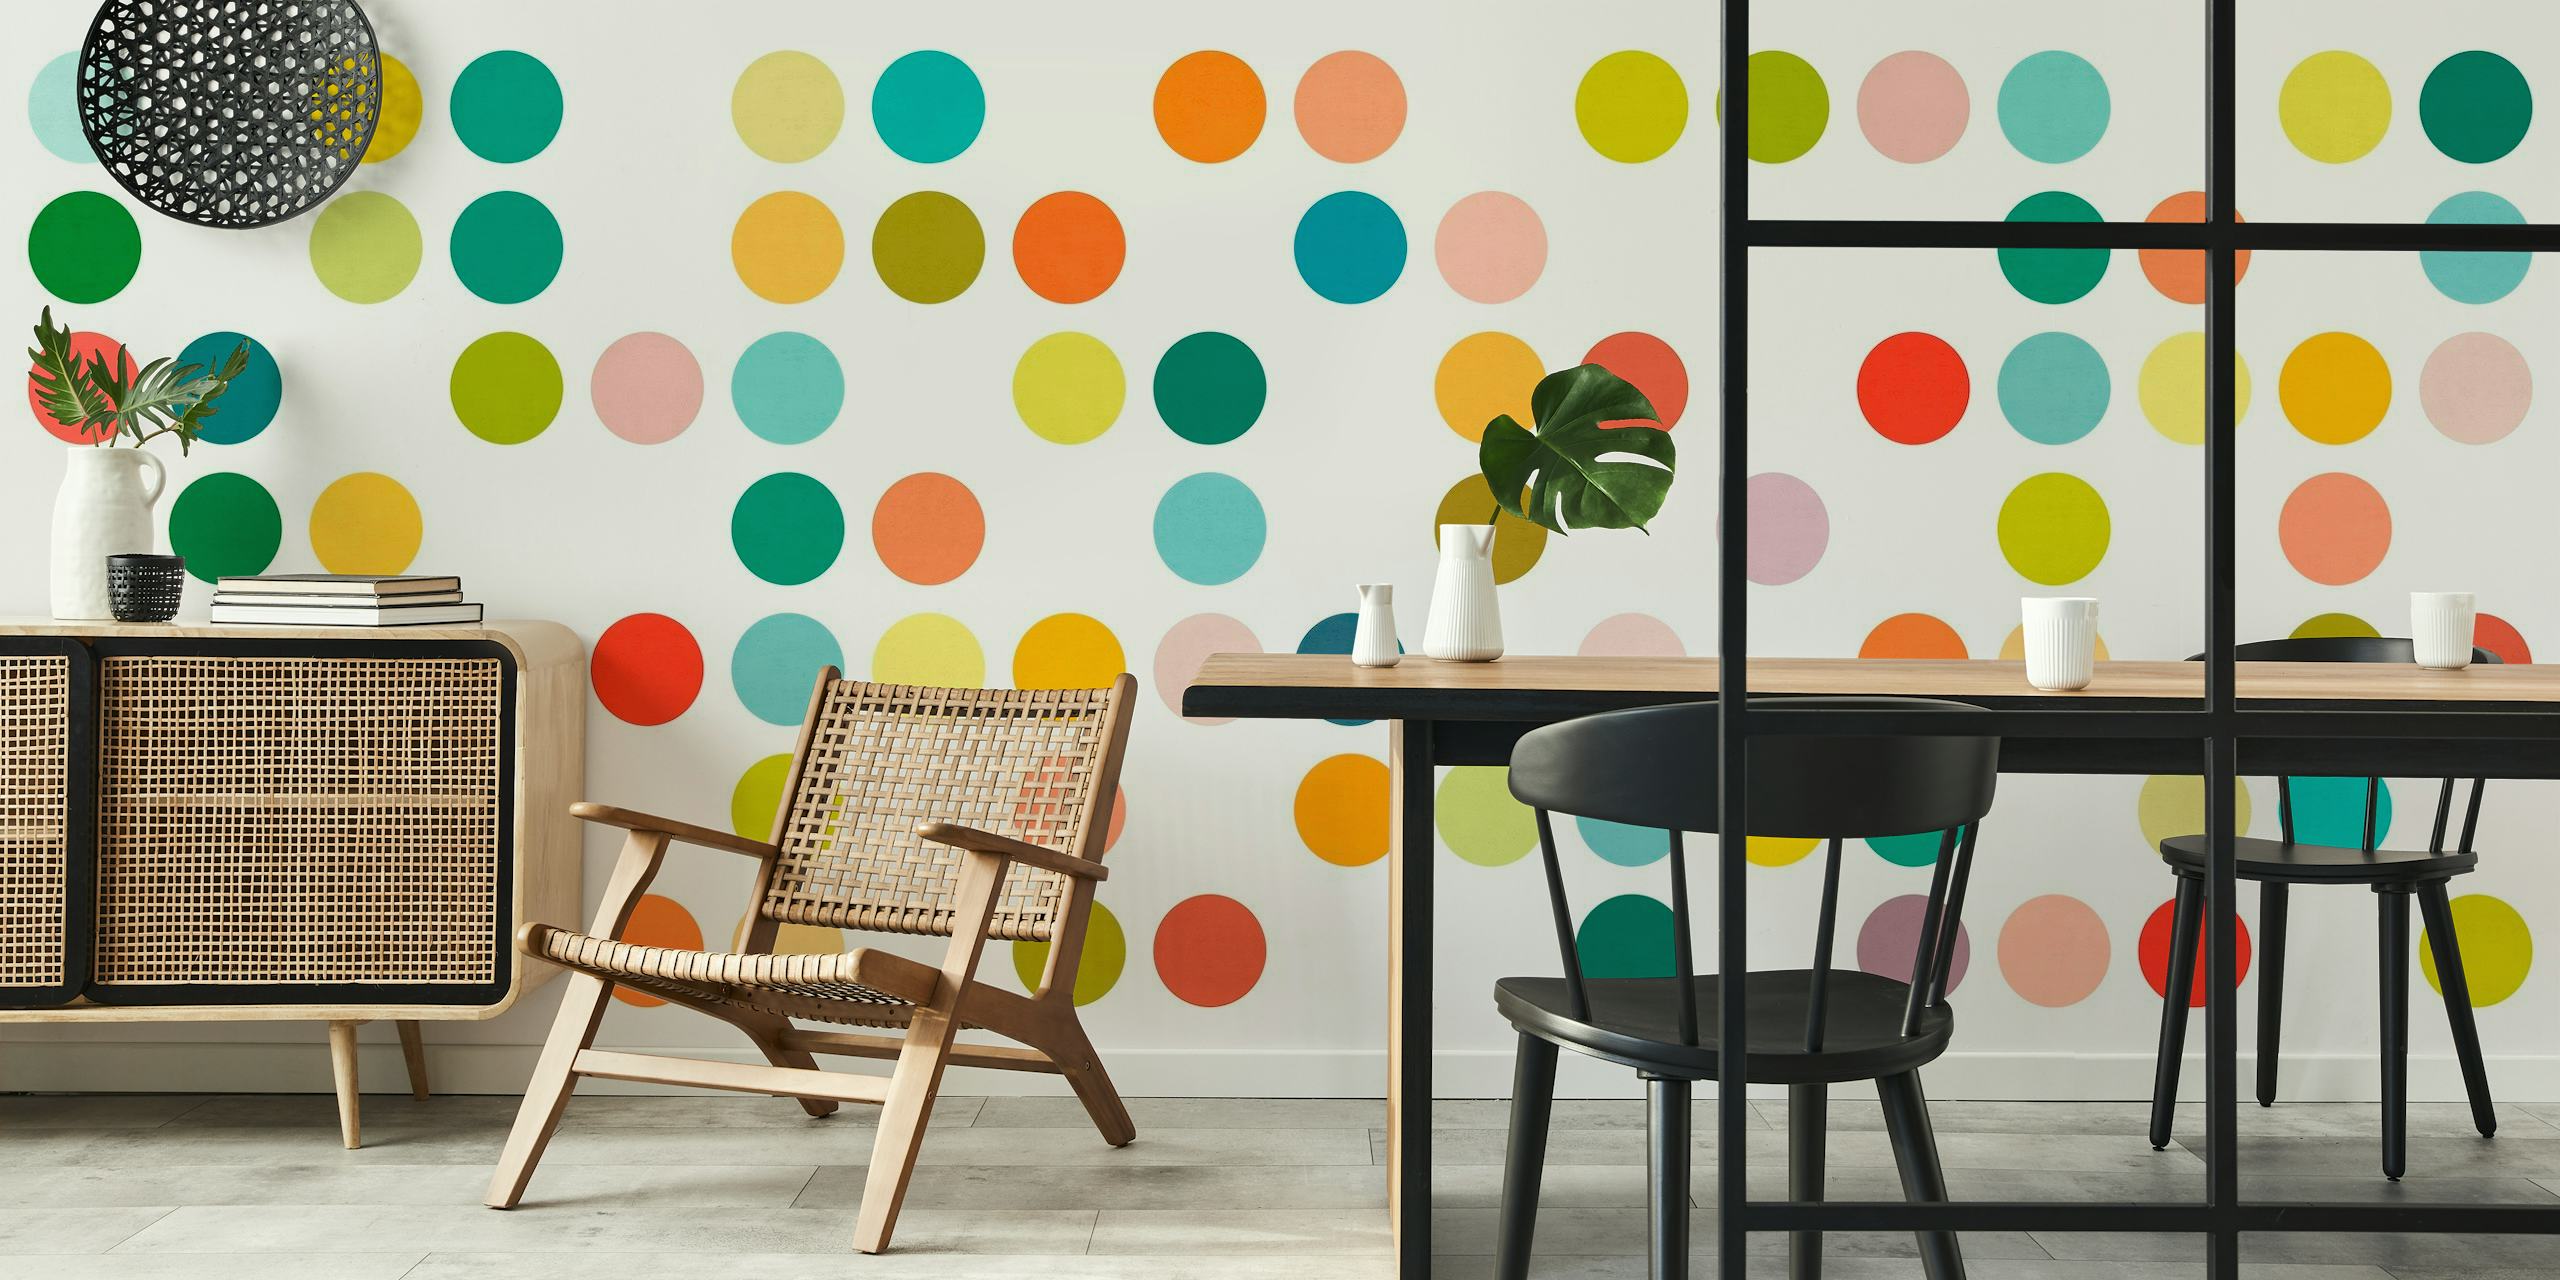 Värikäs pistekuvioinen seinämaalaus, jossa on monikokoisia ympyröitä eri sävyissä